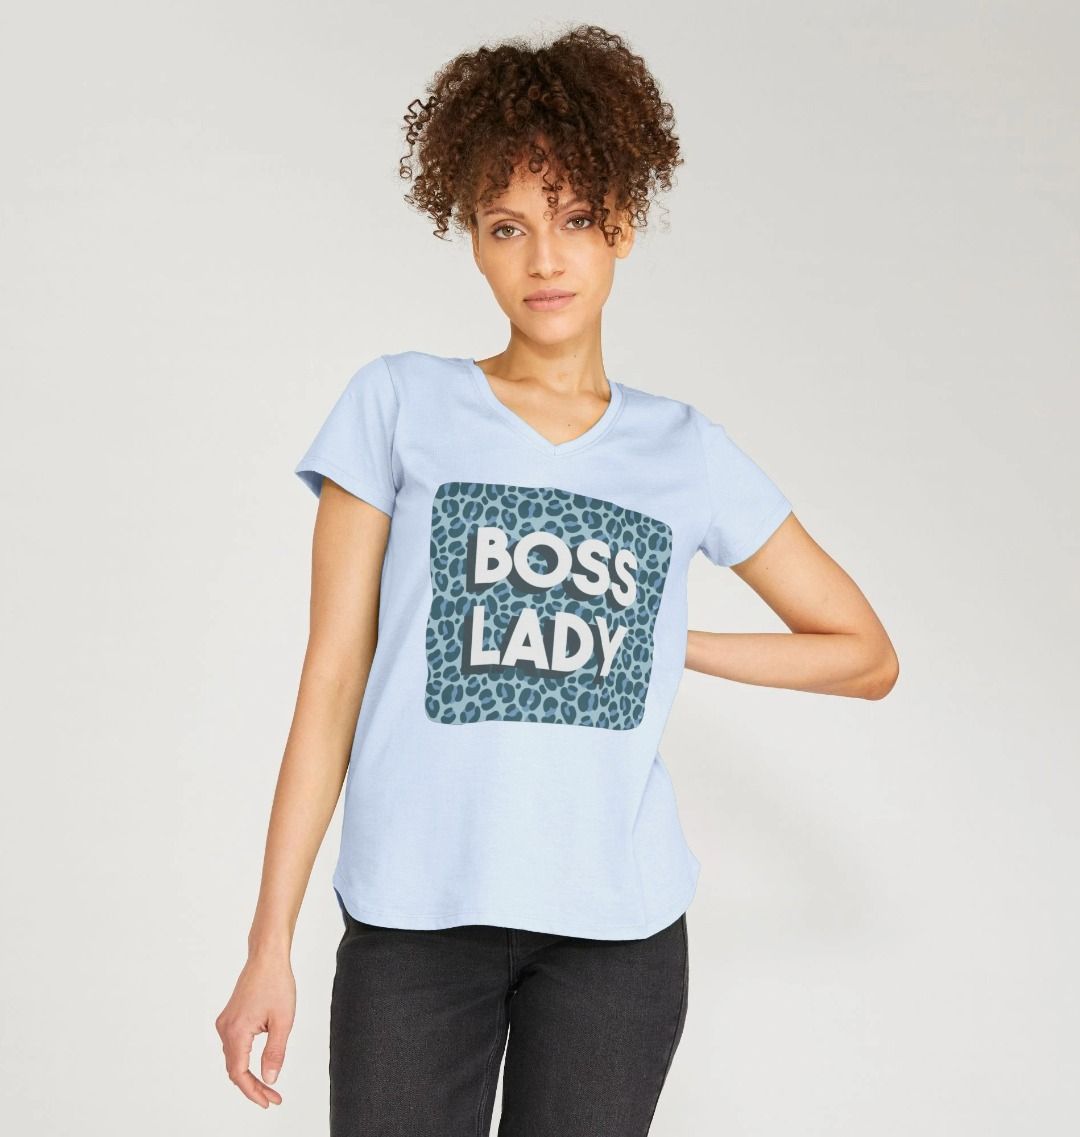 Boss Lady Women's V-Neck T-Shirt